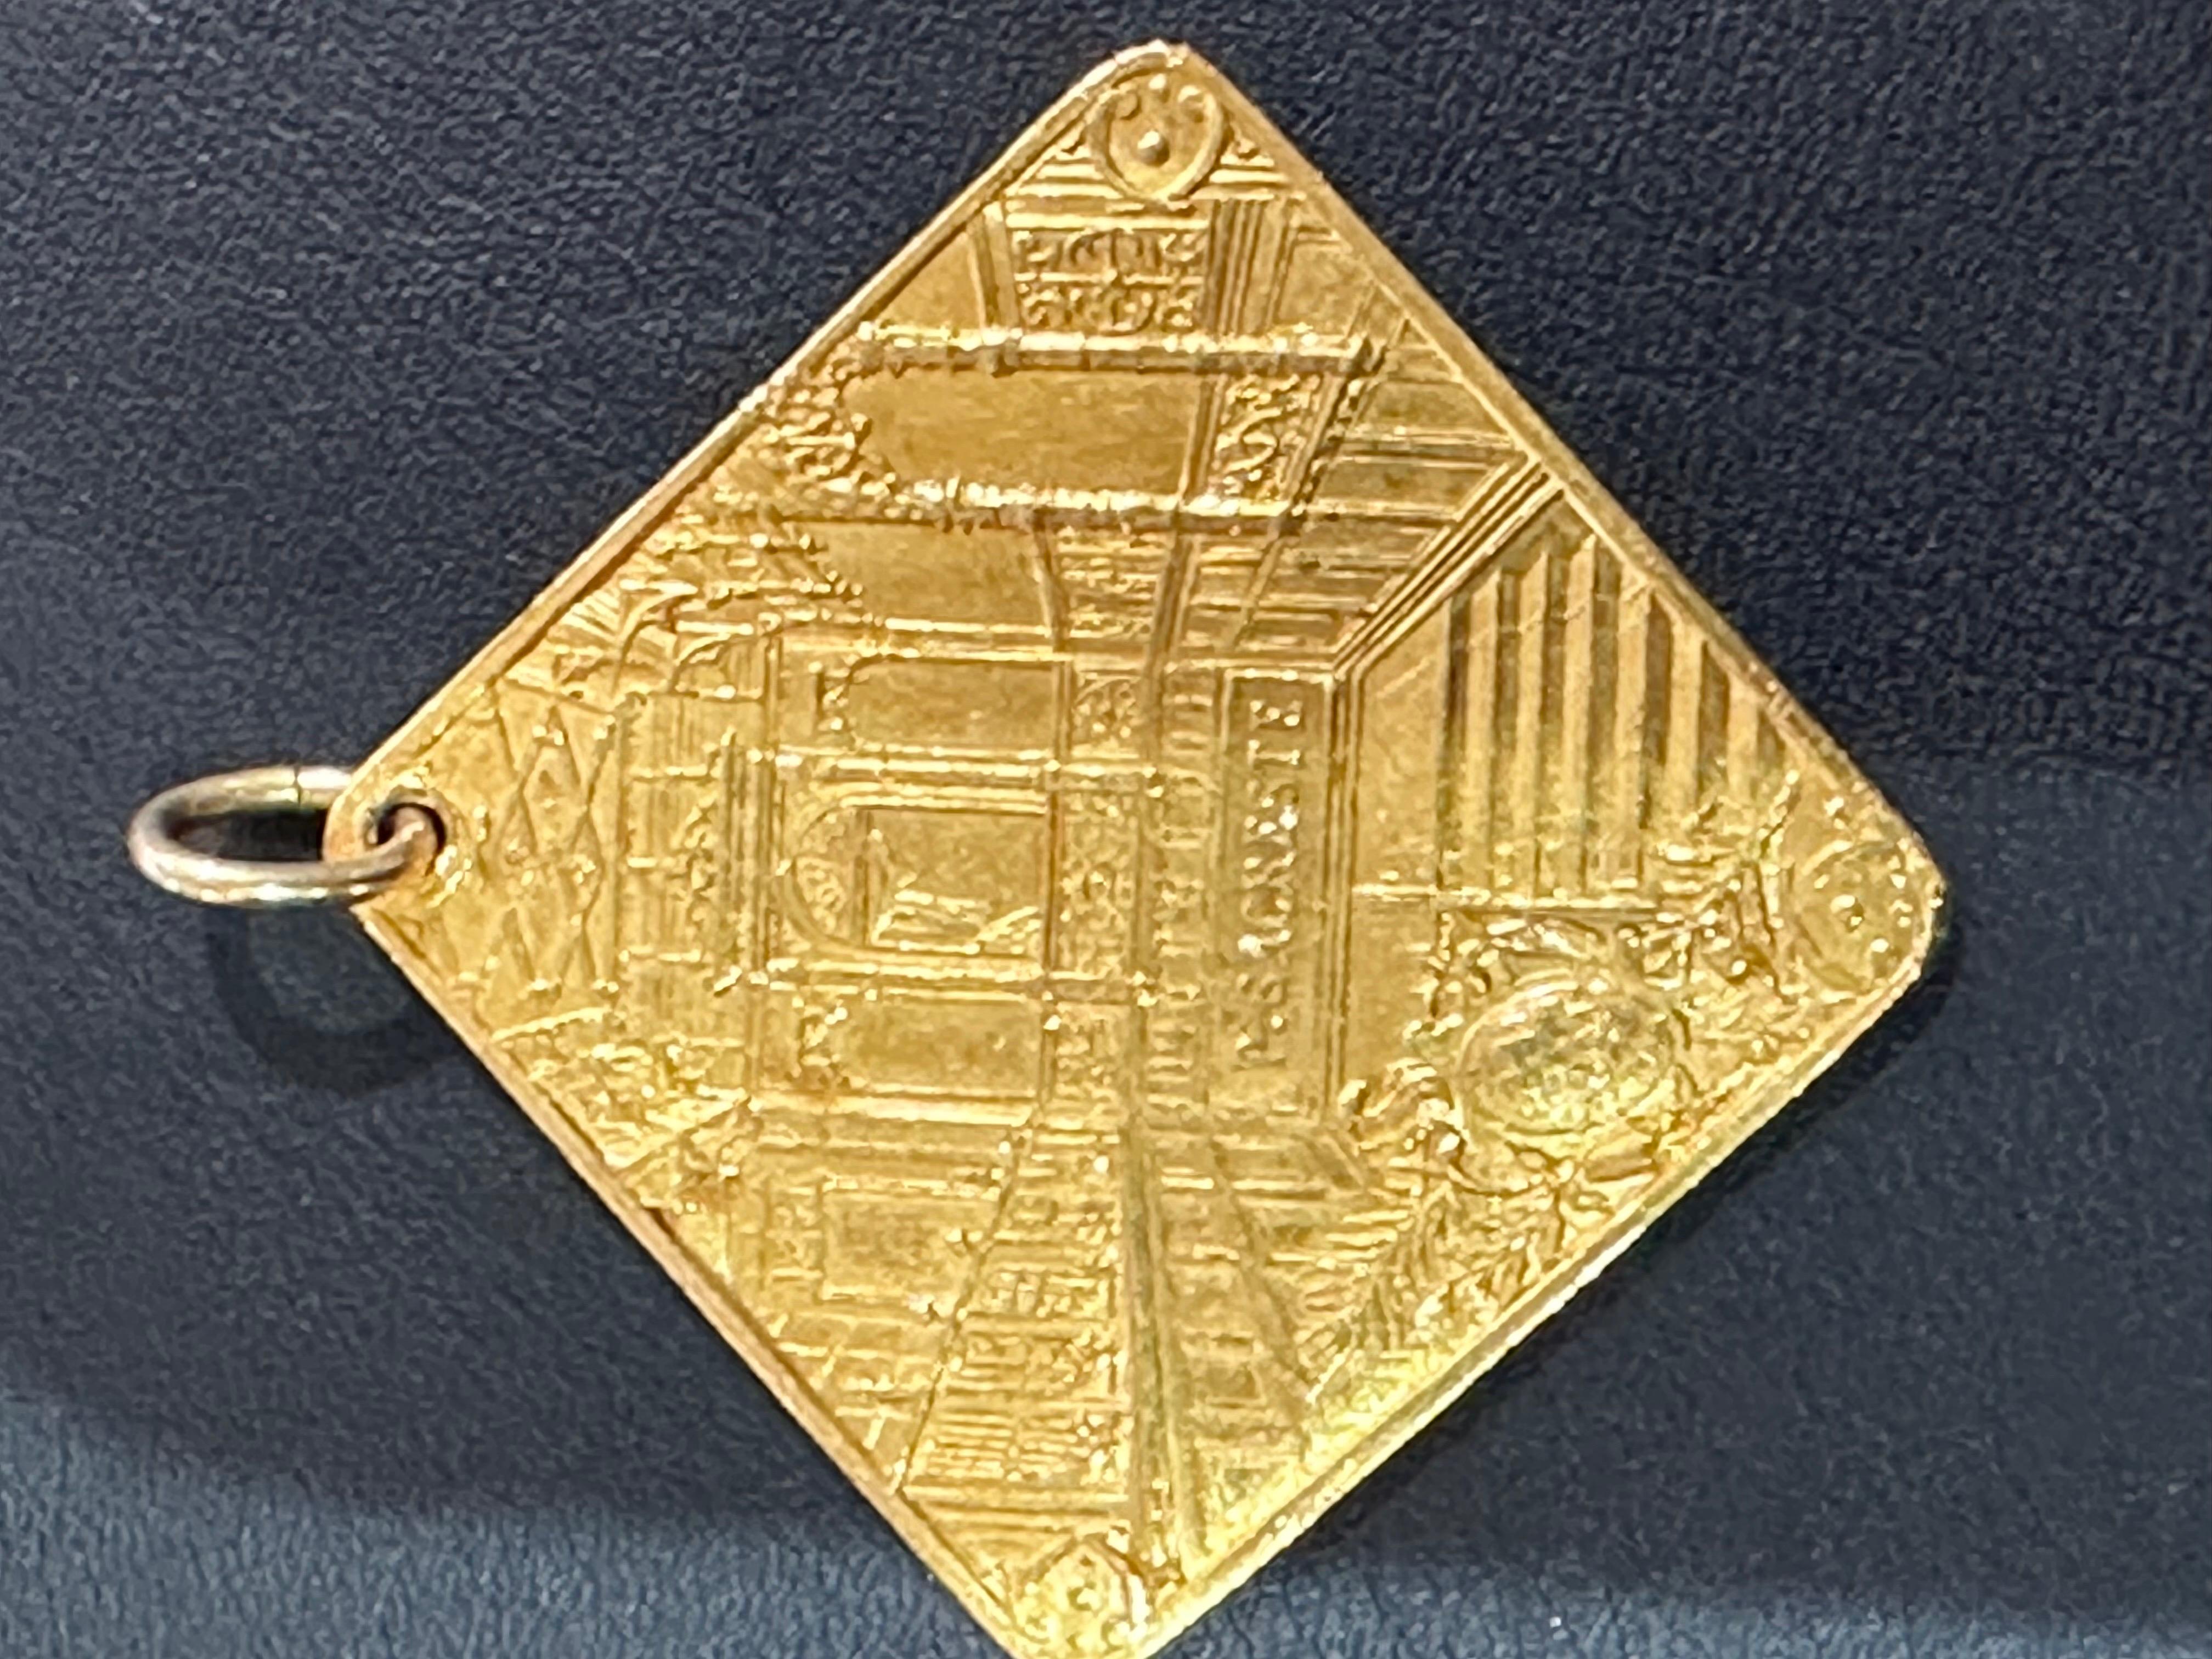 Honorary-Medaille aus 18-karätigem Gelbgold im Portois-Haus
18-Karat-Gelbgold-Ehrenmedaille

Quadratische Medaille, die zwei Männer mit den Namen: A.PORTOIS. und A.FIX ihr Porträt ist sehr fein gemeißelt. Auf der anderen Seite eine Treppe,